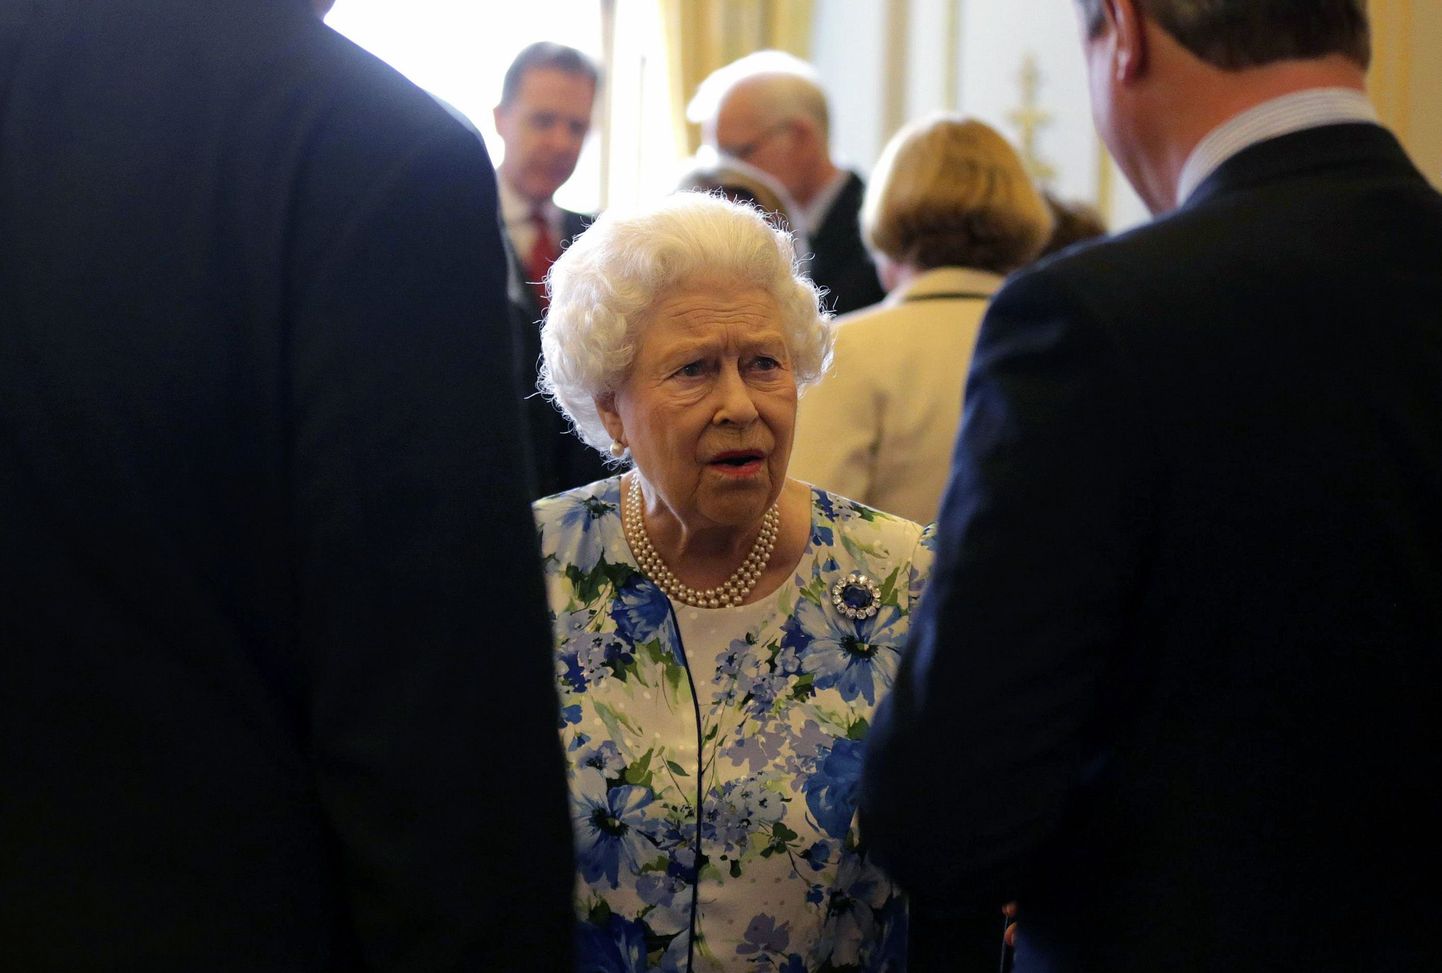 Briti kuninganna Elizabeth II kohtumisel peaminister David Cameroniga.